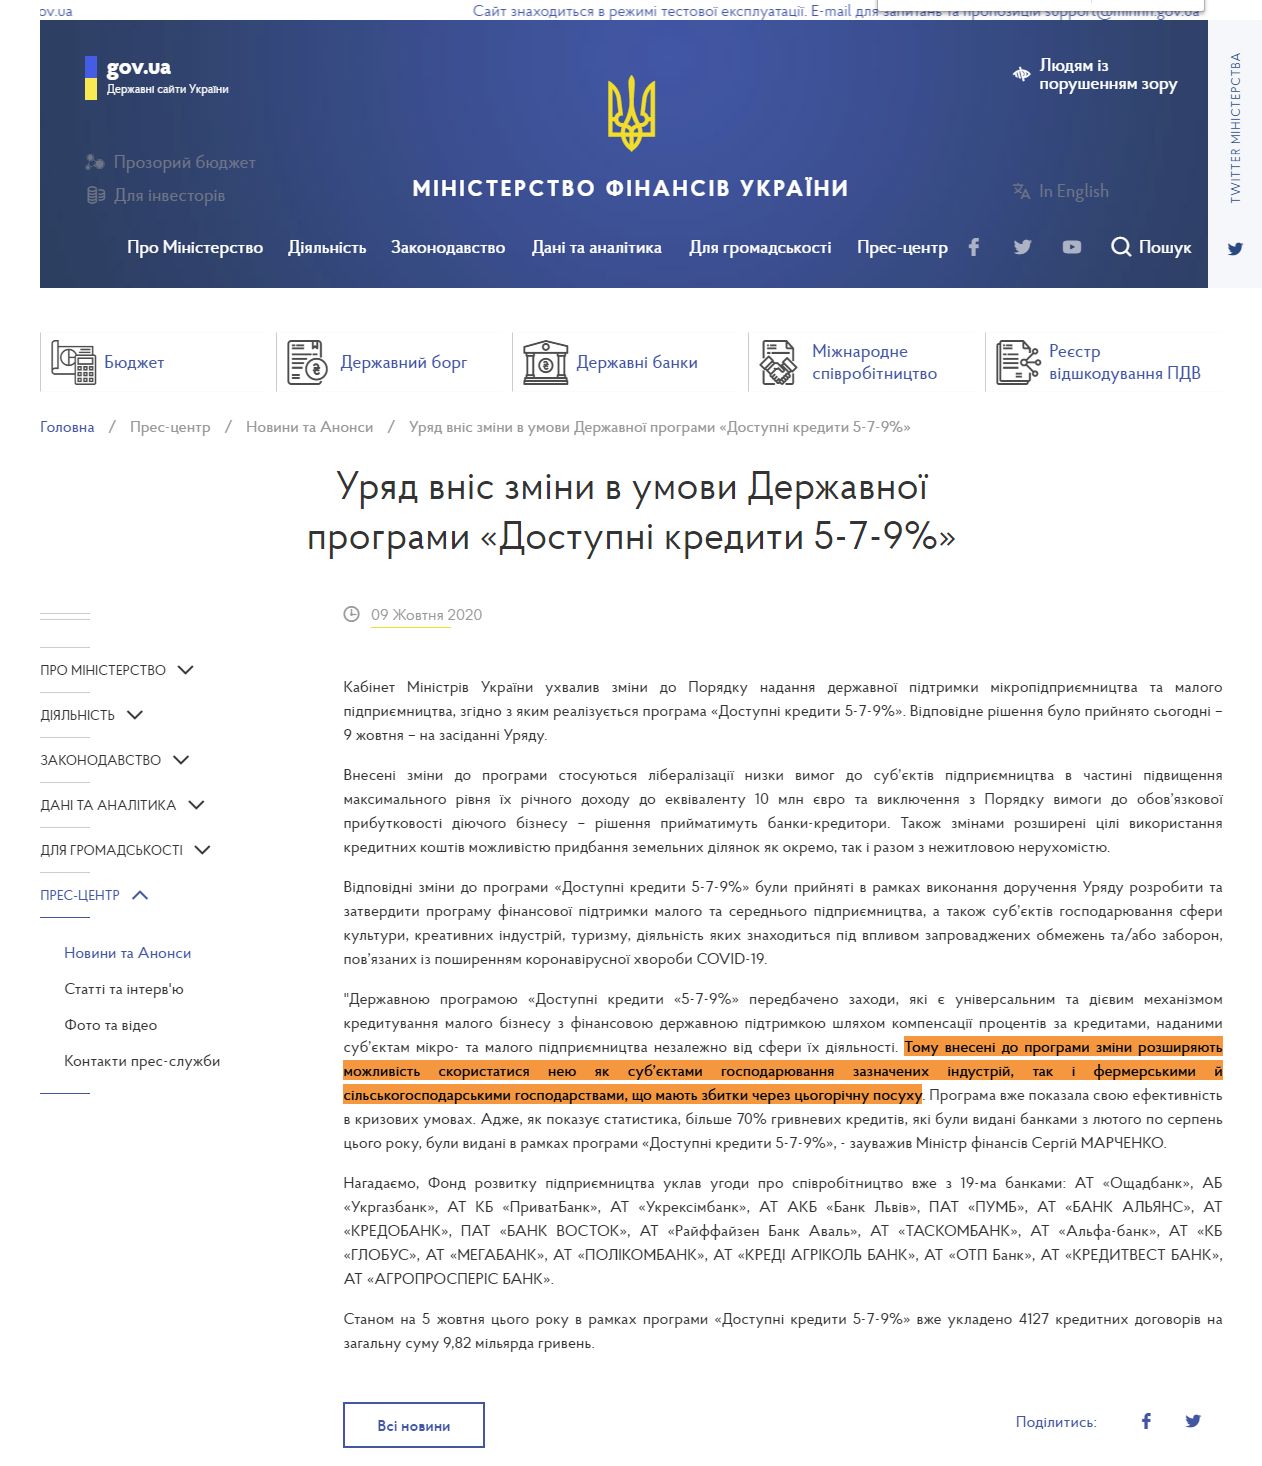 https://www.kmu.gov.ua/news/uryad-vnis-zmini-v-umovi-derzhavnoyi-programi-dostupni-krediti-5-7-9